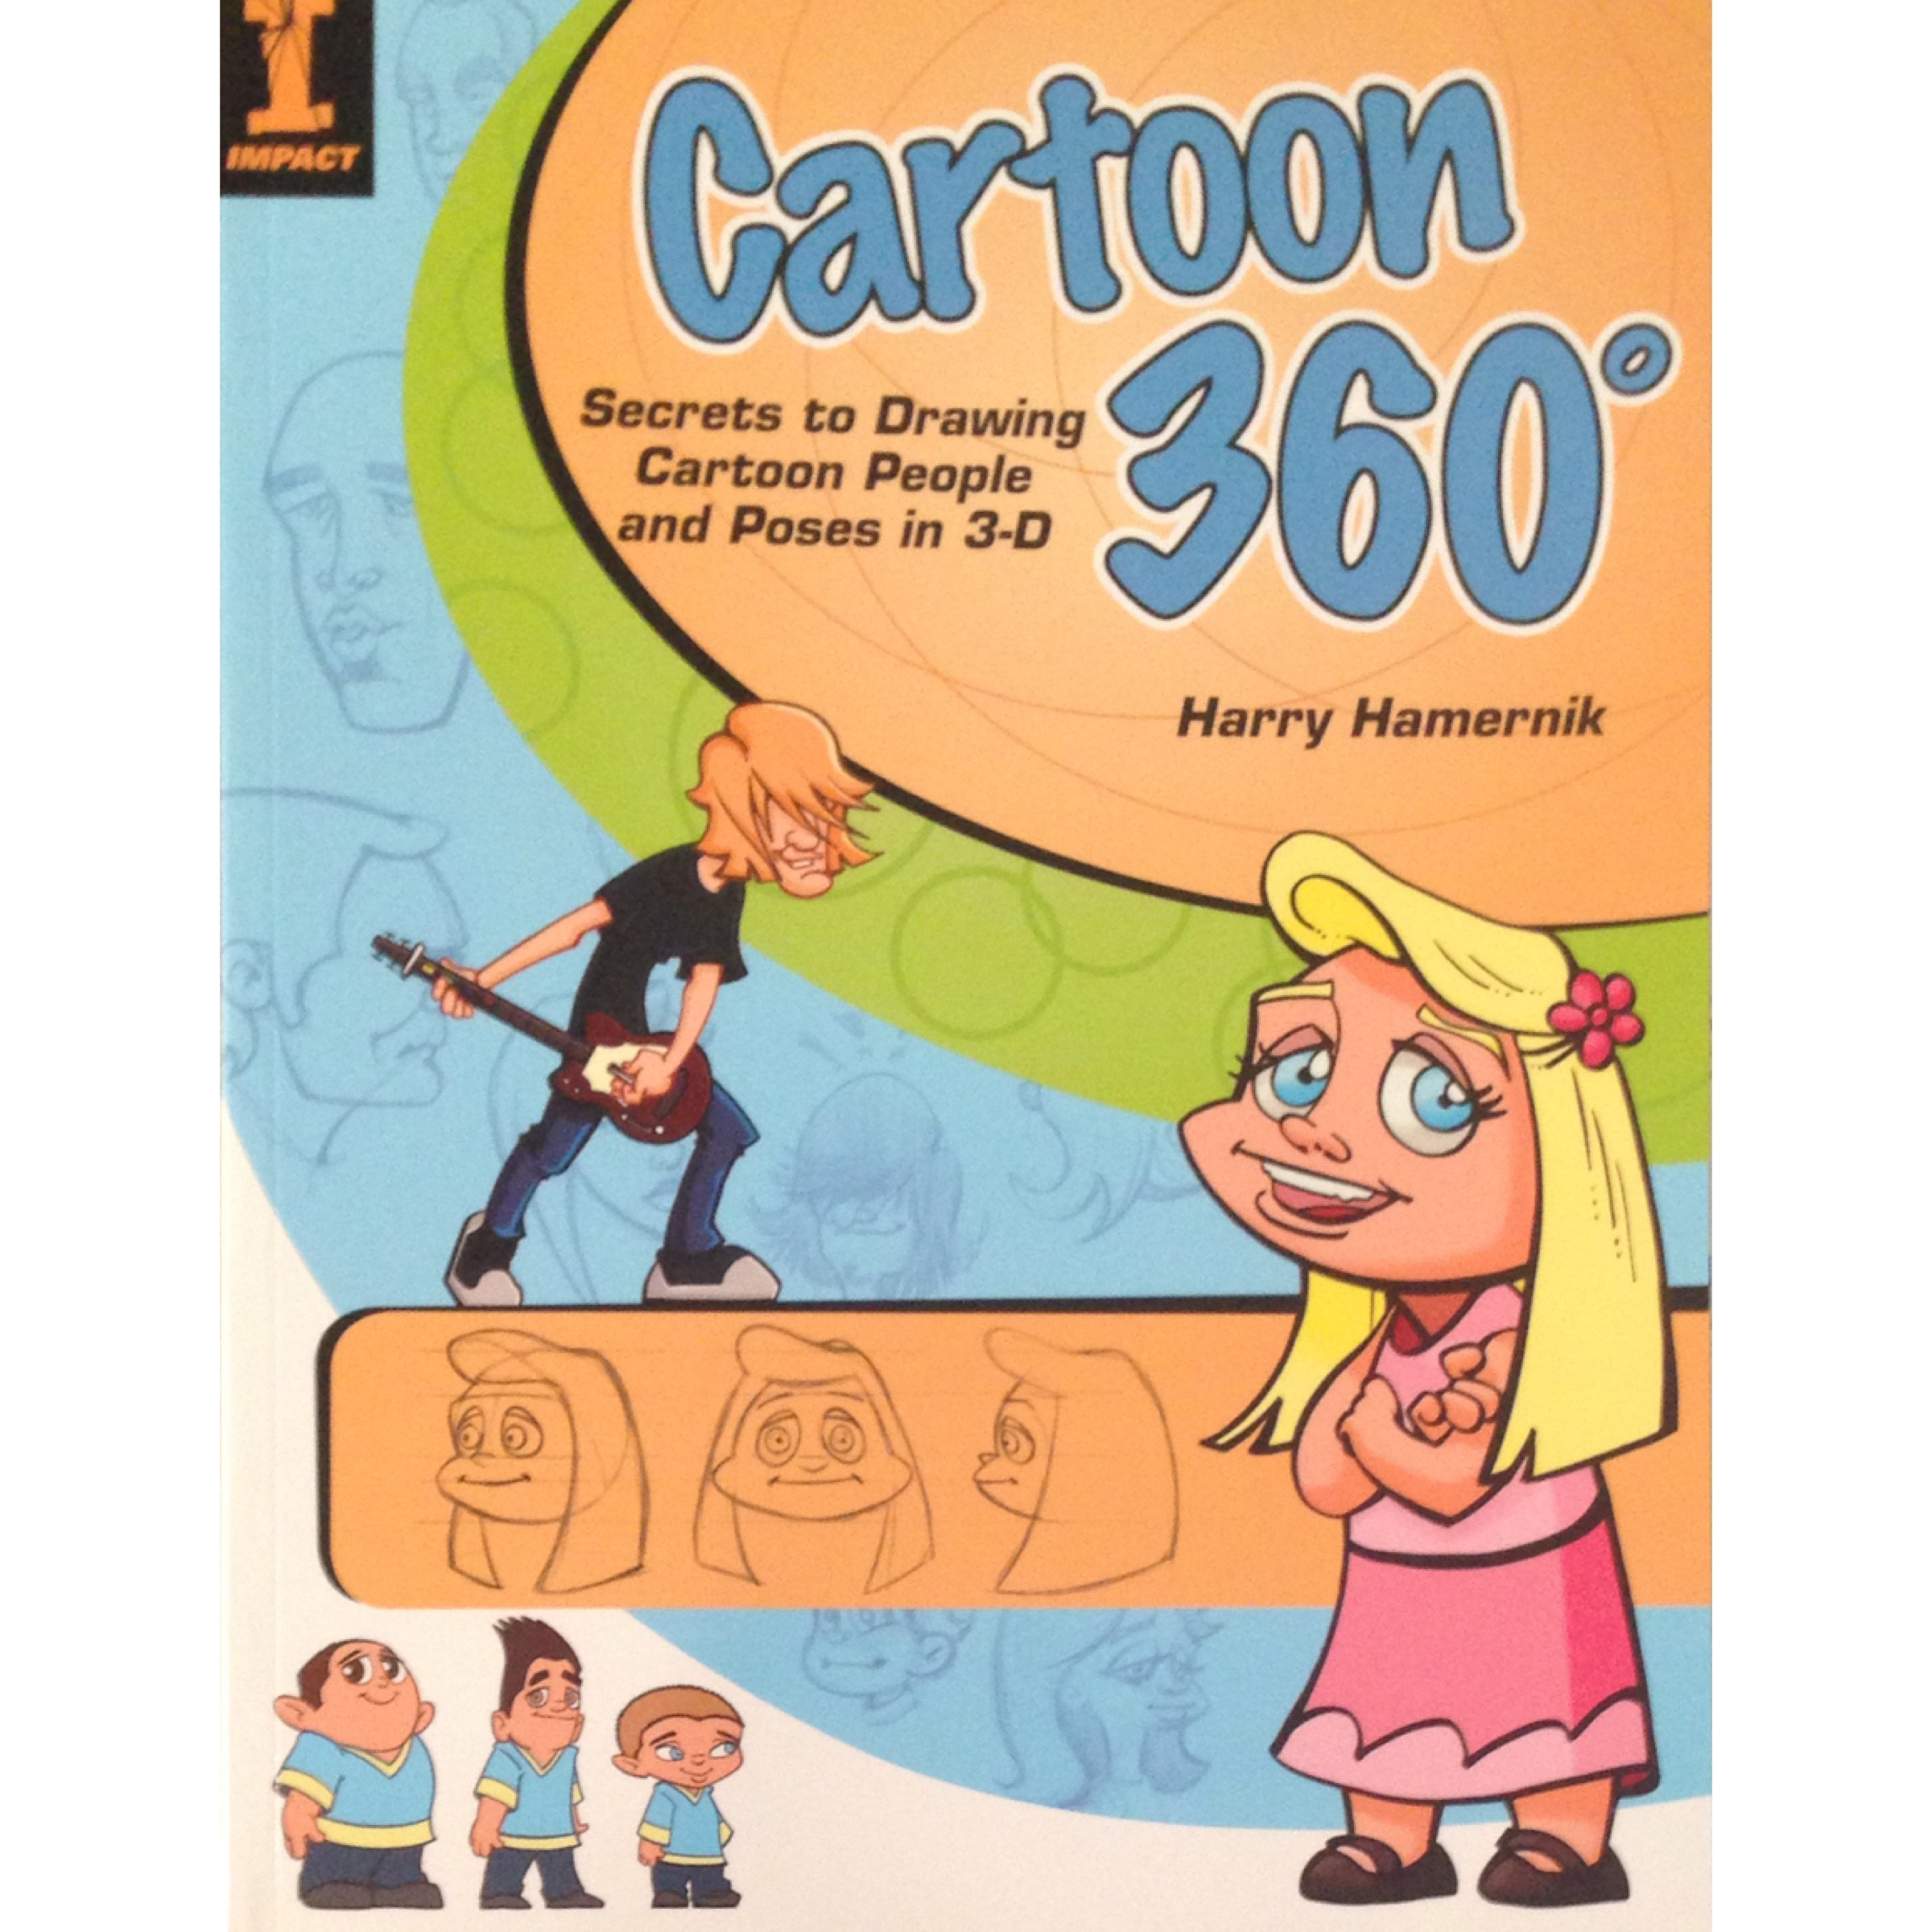 Adult Cartoon Books